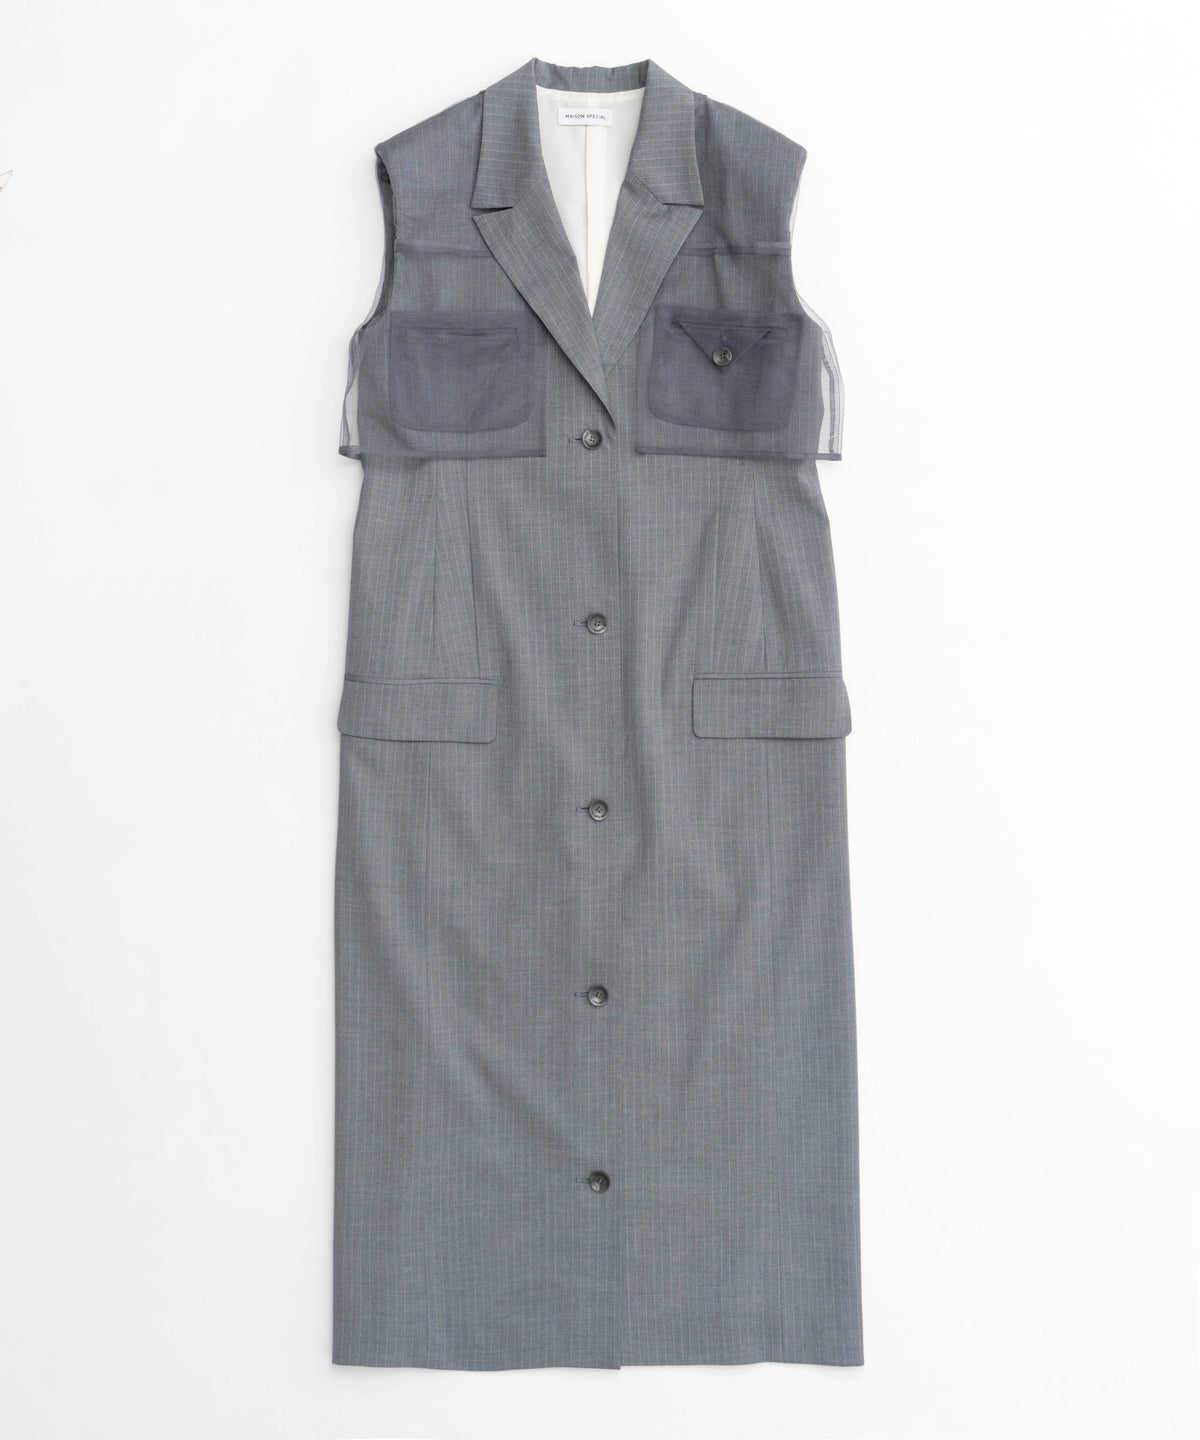 【SALE】Tailored Gilet One-piece Dress